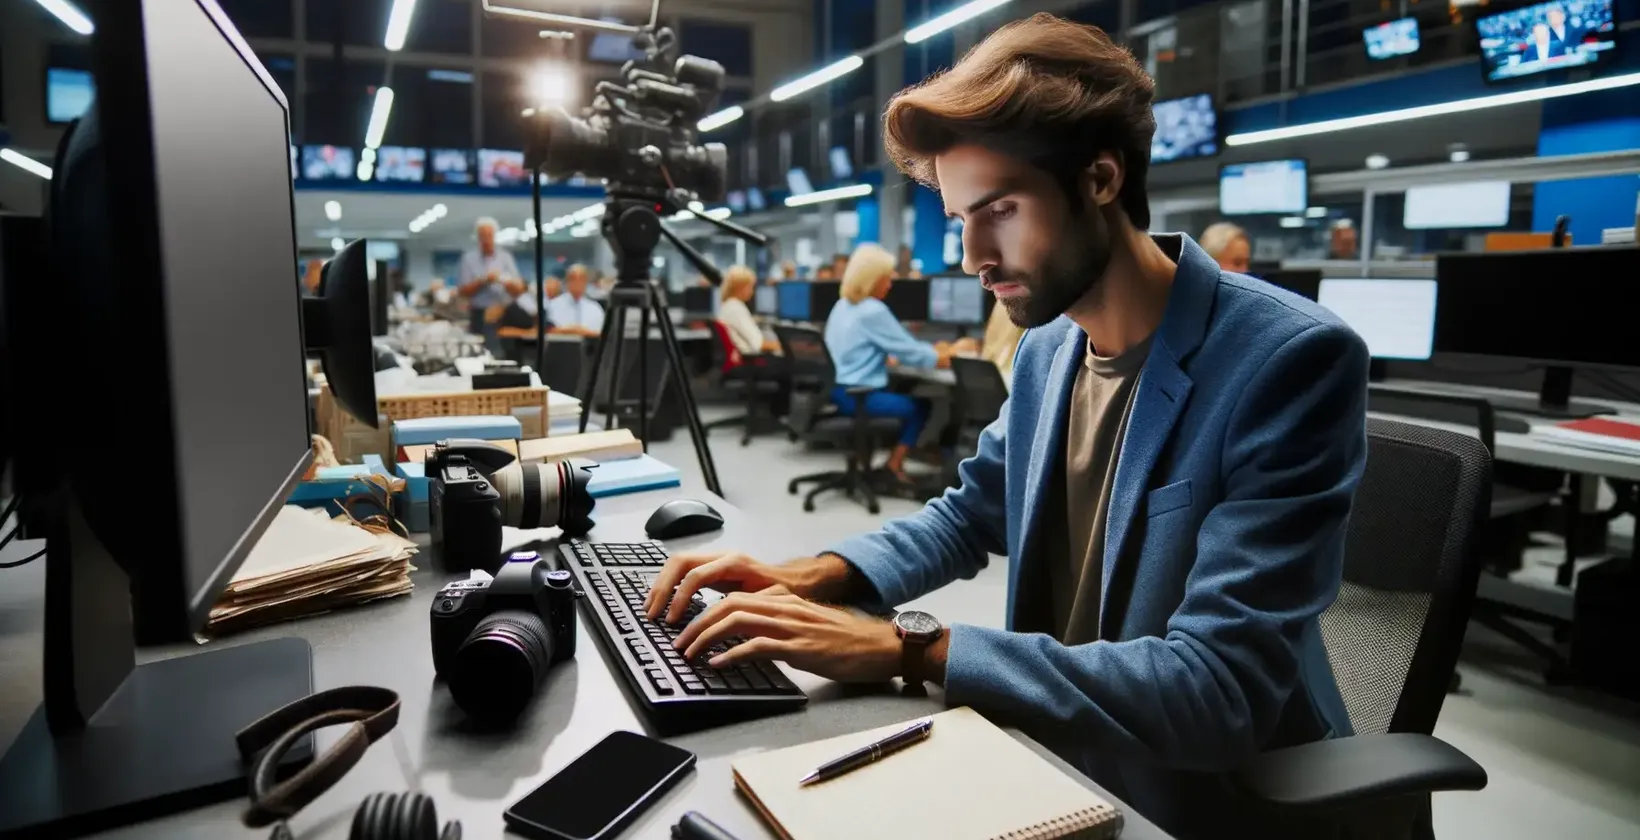 忙しいニュースルームで、パソコンでテープ起こしソフトを使っているジャーナリスト。
